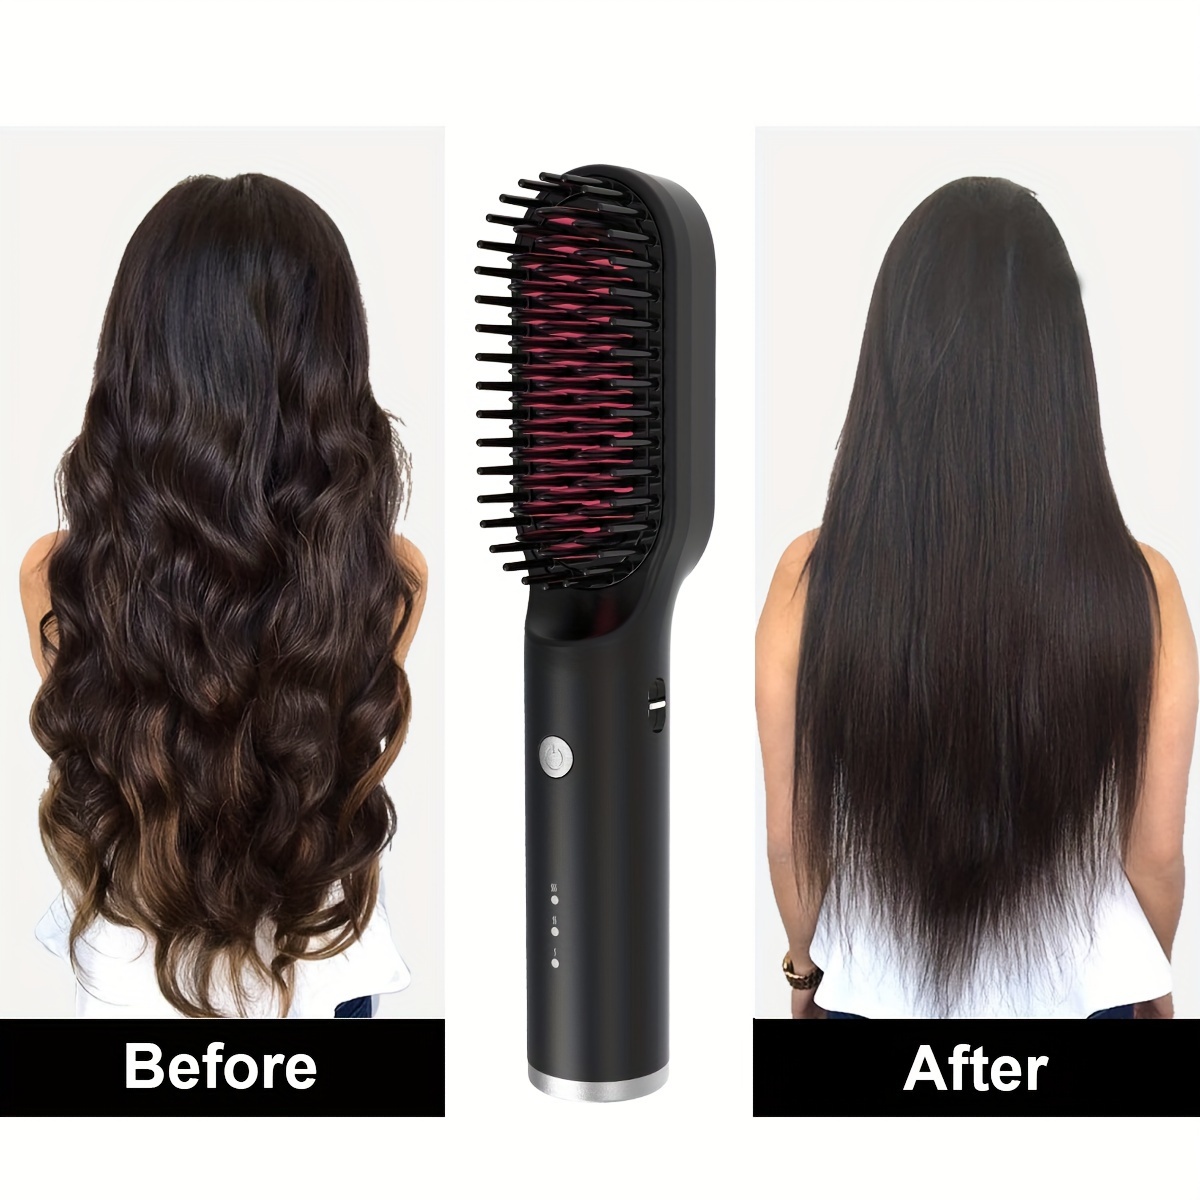 Plancha de pelo VS cepillo alisador: ¿Cuál es el mejor?, Revista KENA  México